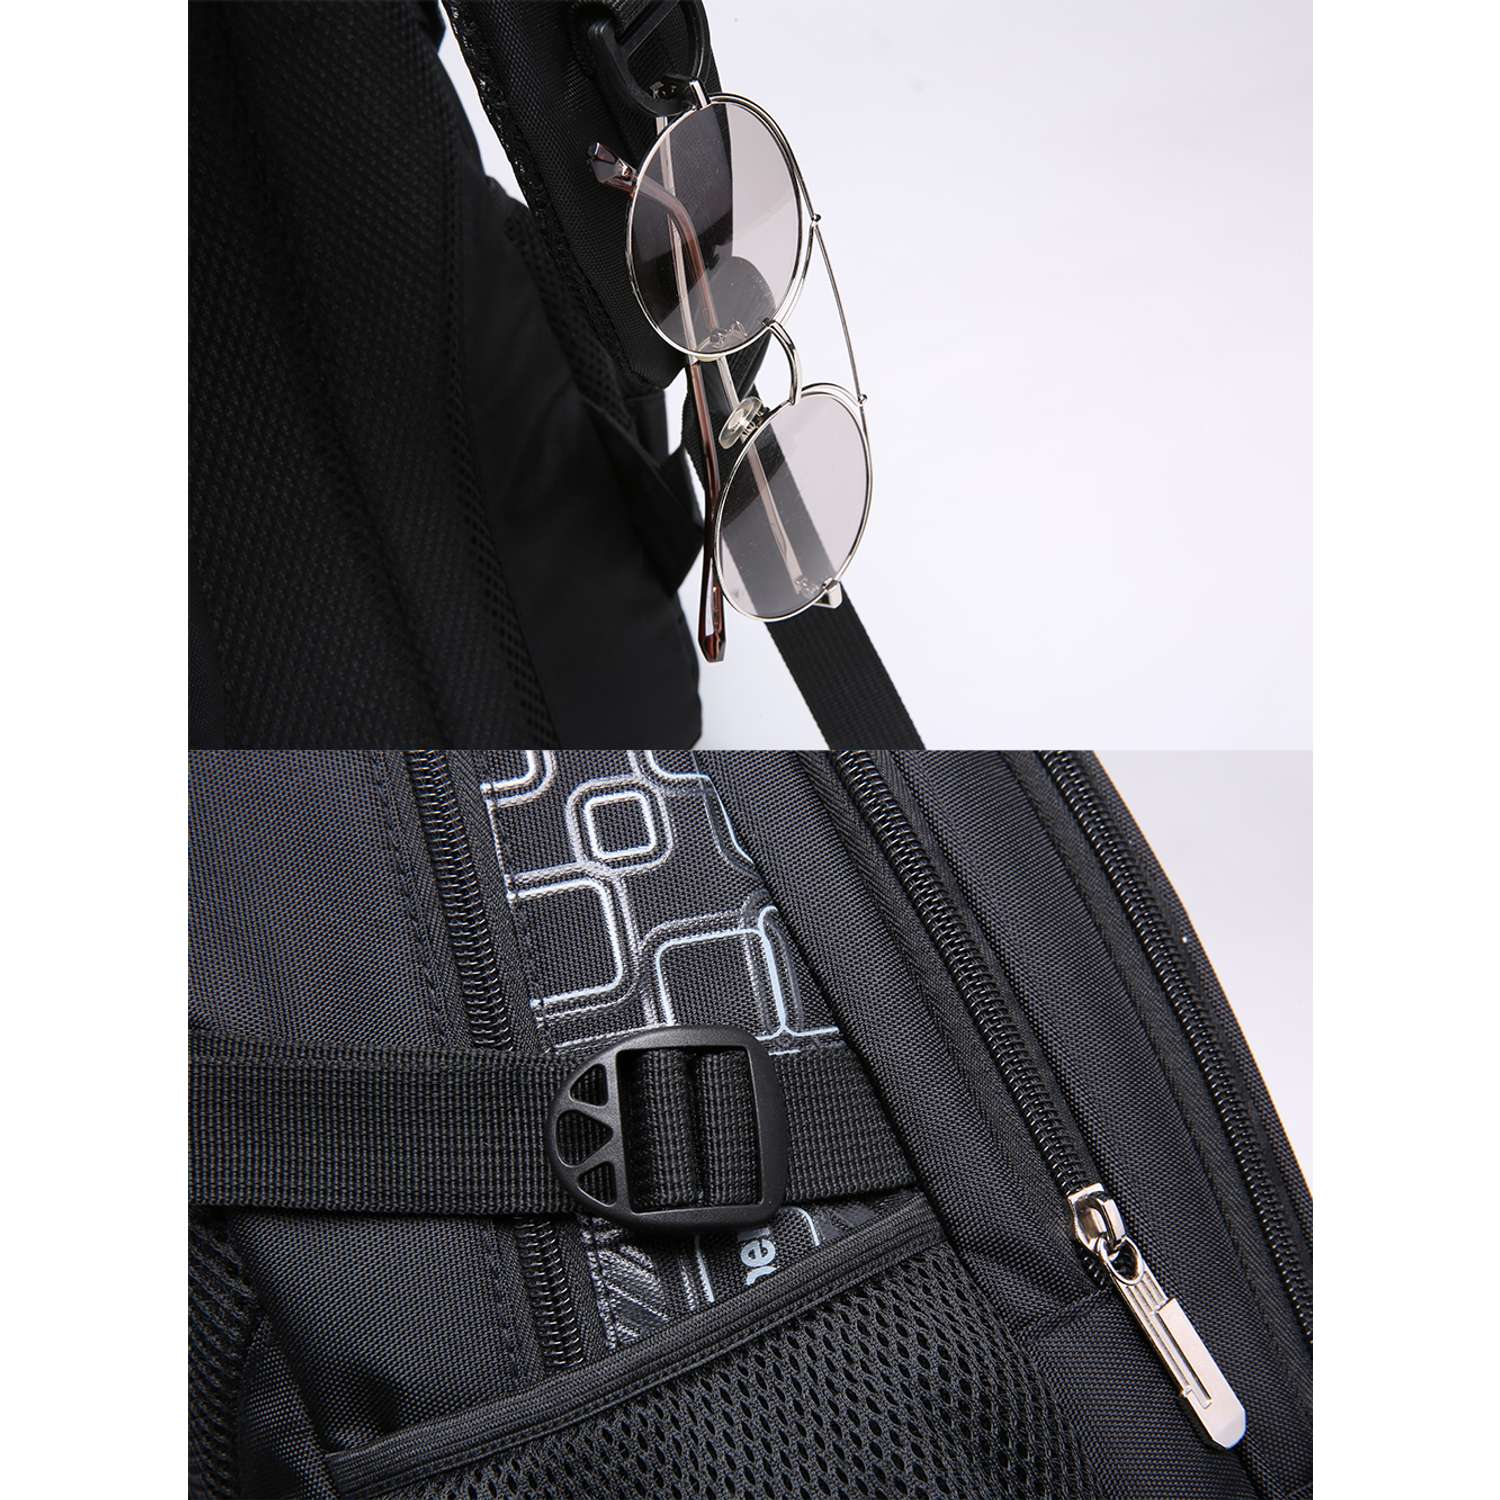 Рюкзак школьный Evoline большой черный серый EVOS-320 - фото 5